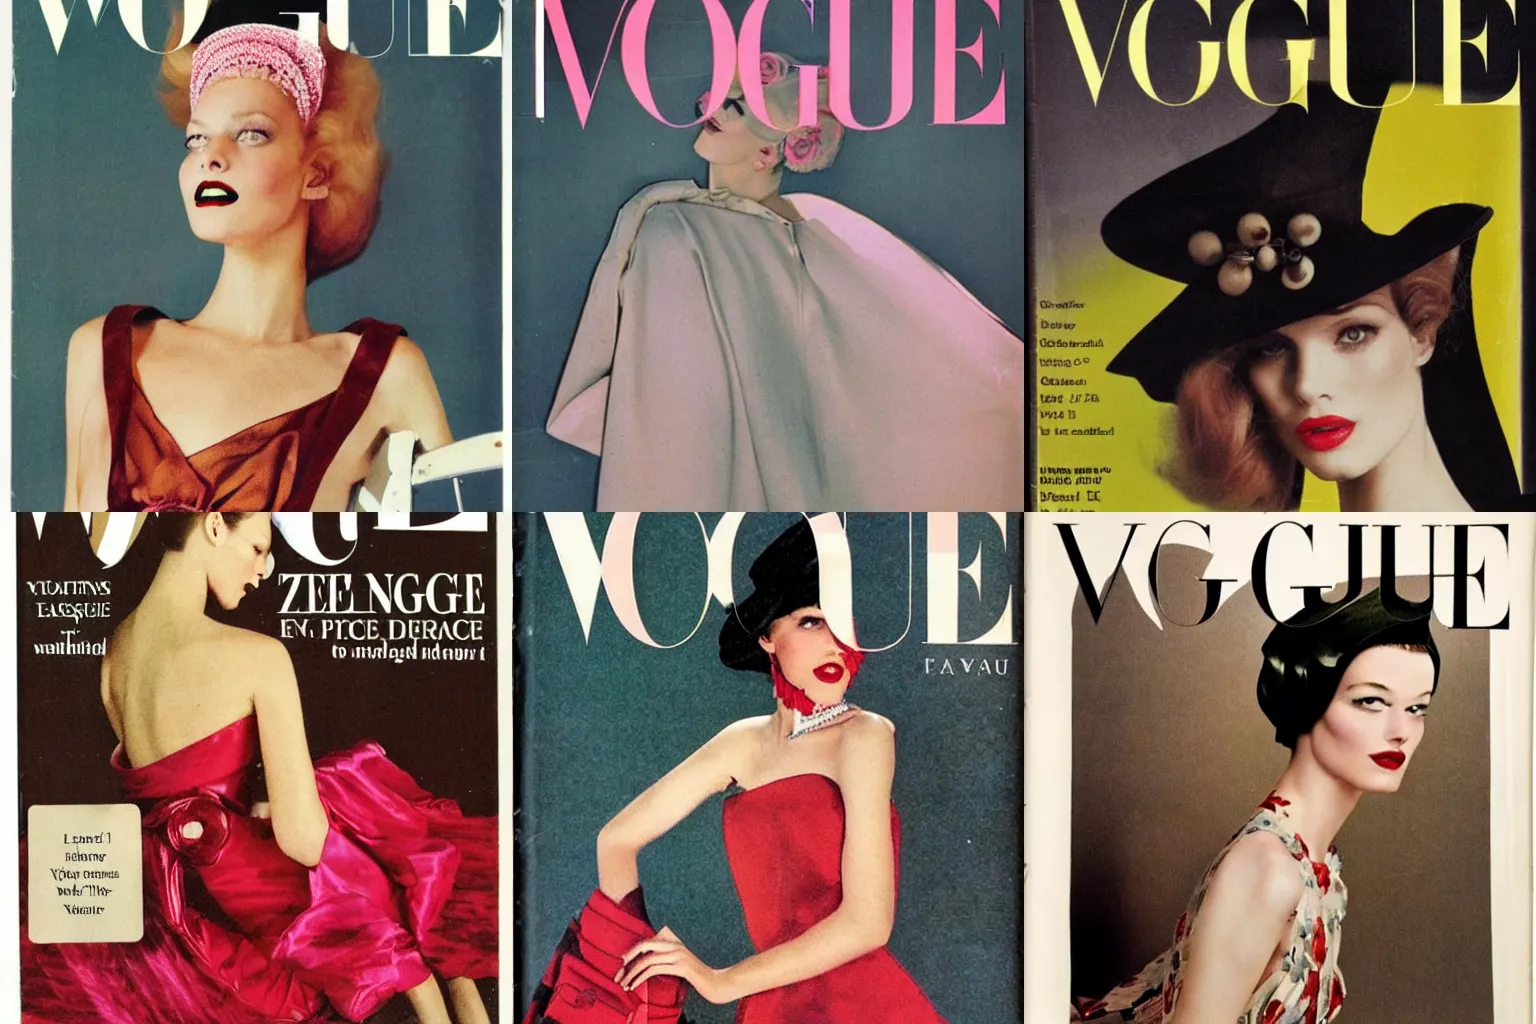 Prompt: vintage vogue fashion magazine cover